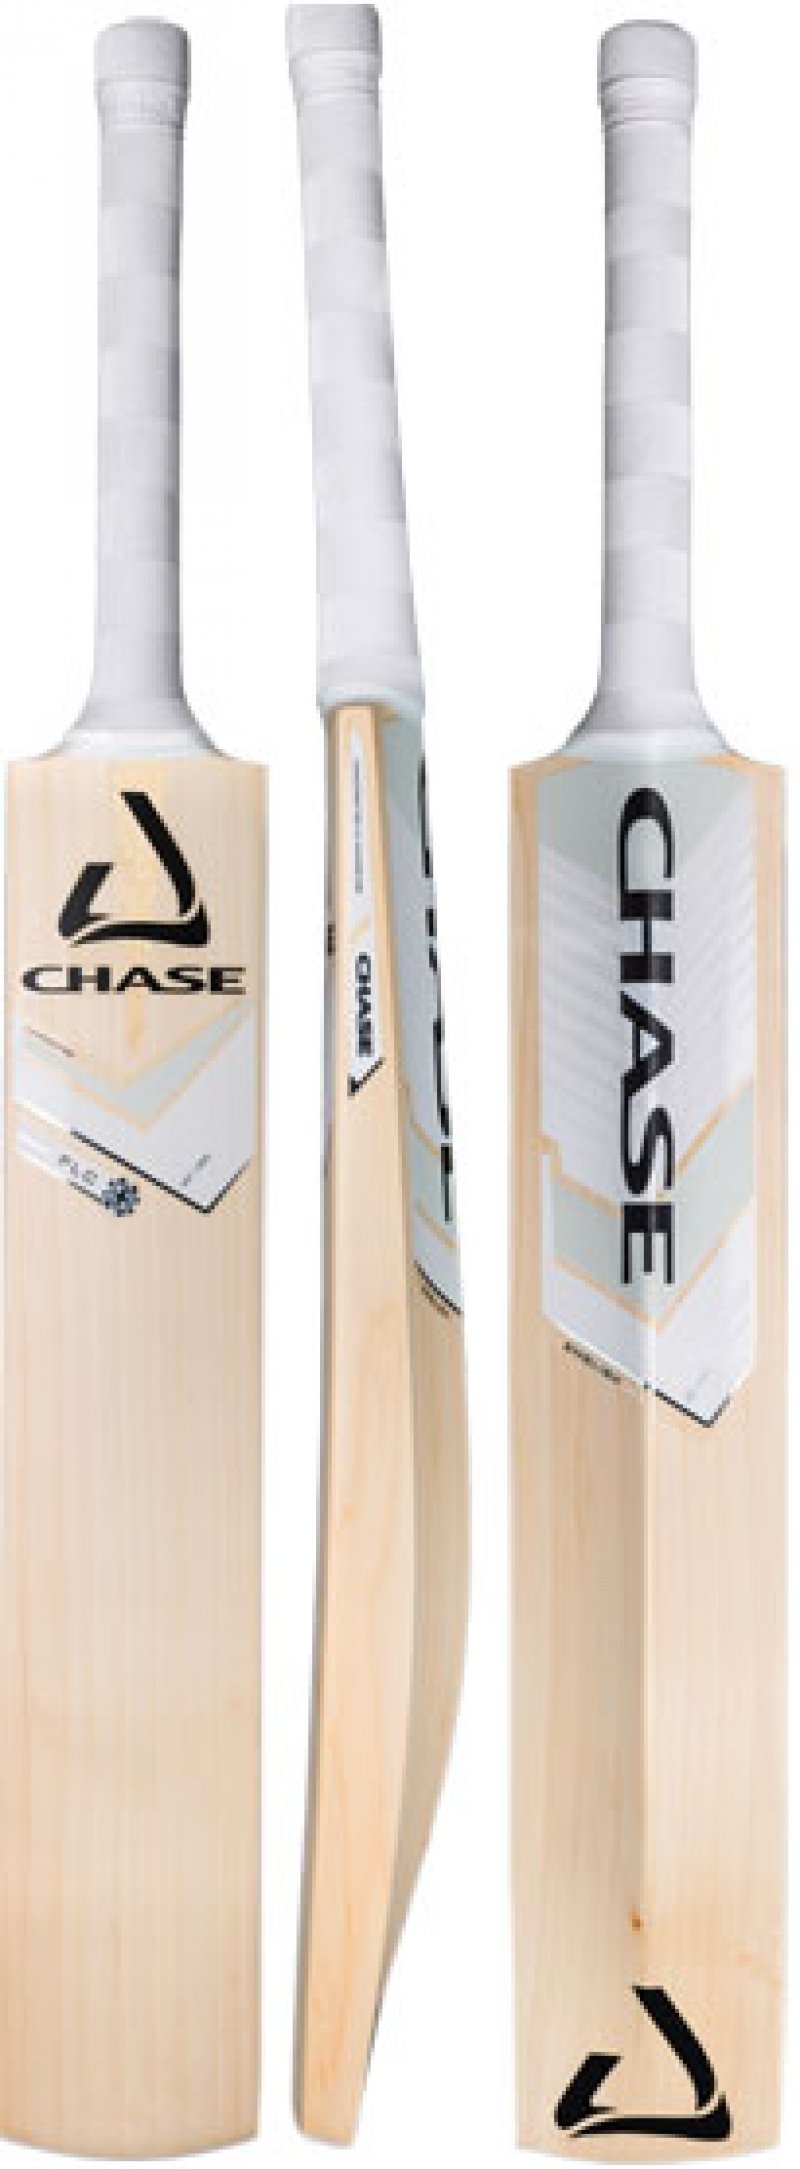 Chase Four Leaf Clover (FLC) Cricket Bat